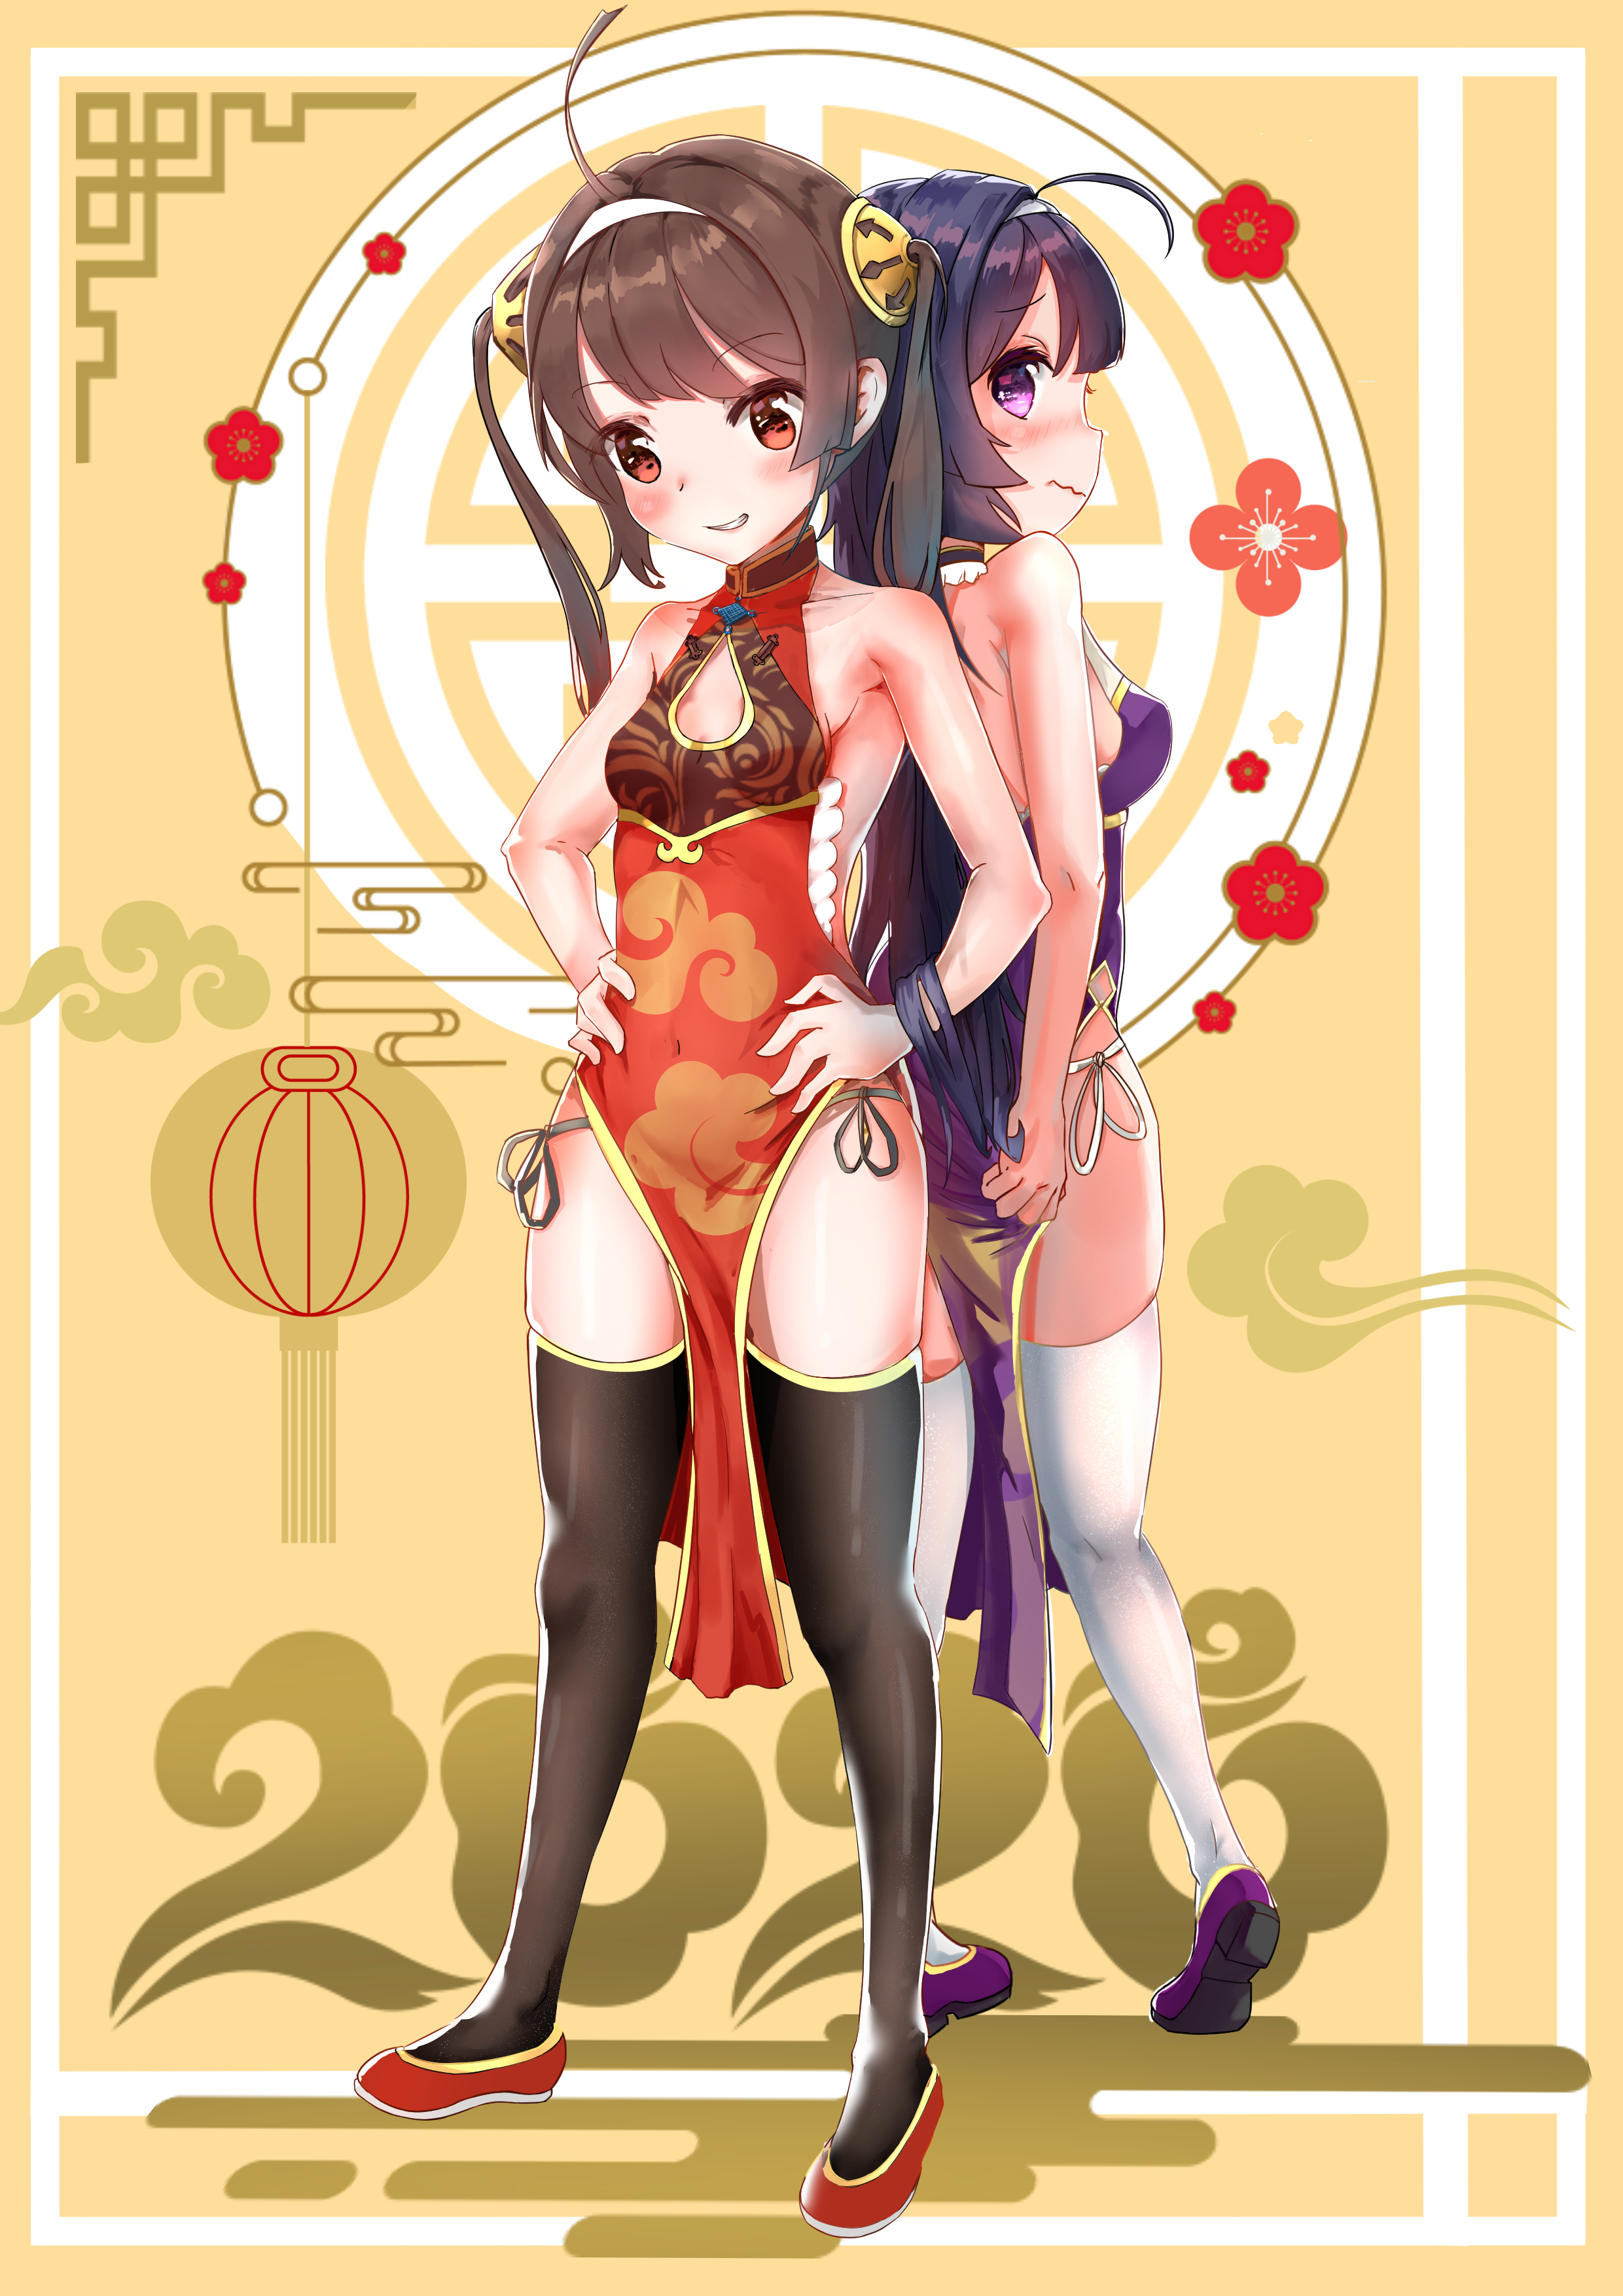 Anime 2480x3508 anime anime girls Azur Lane Ning Hai (Azur Lane) Ping Hai (Azur Lane) twintails long hair purple hair brunette twins two women artwork digital art fan art